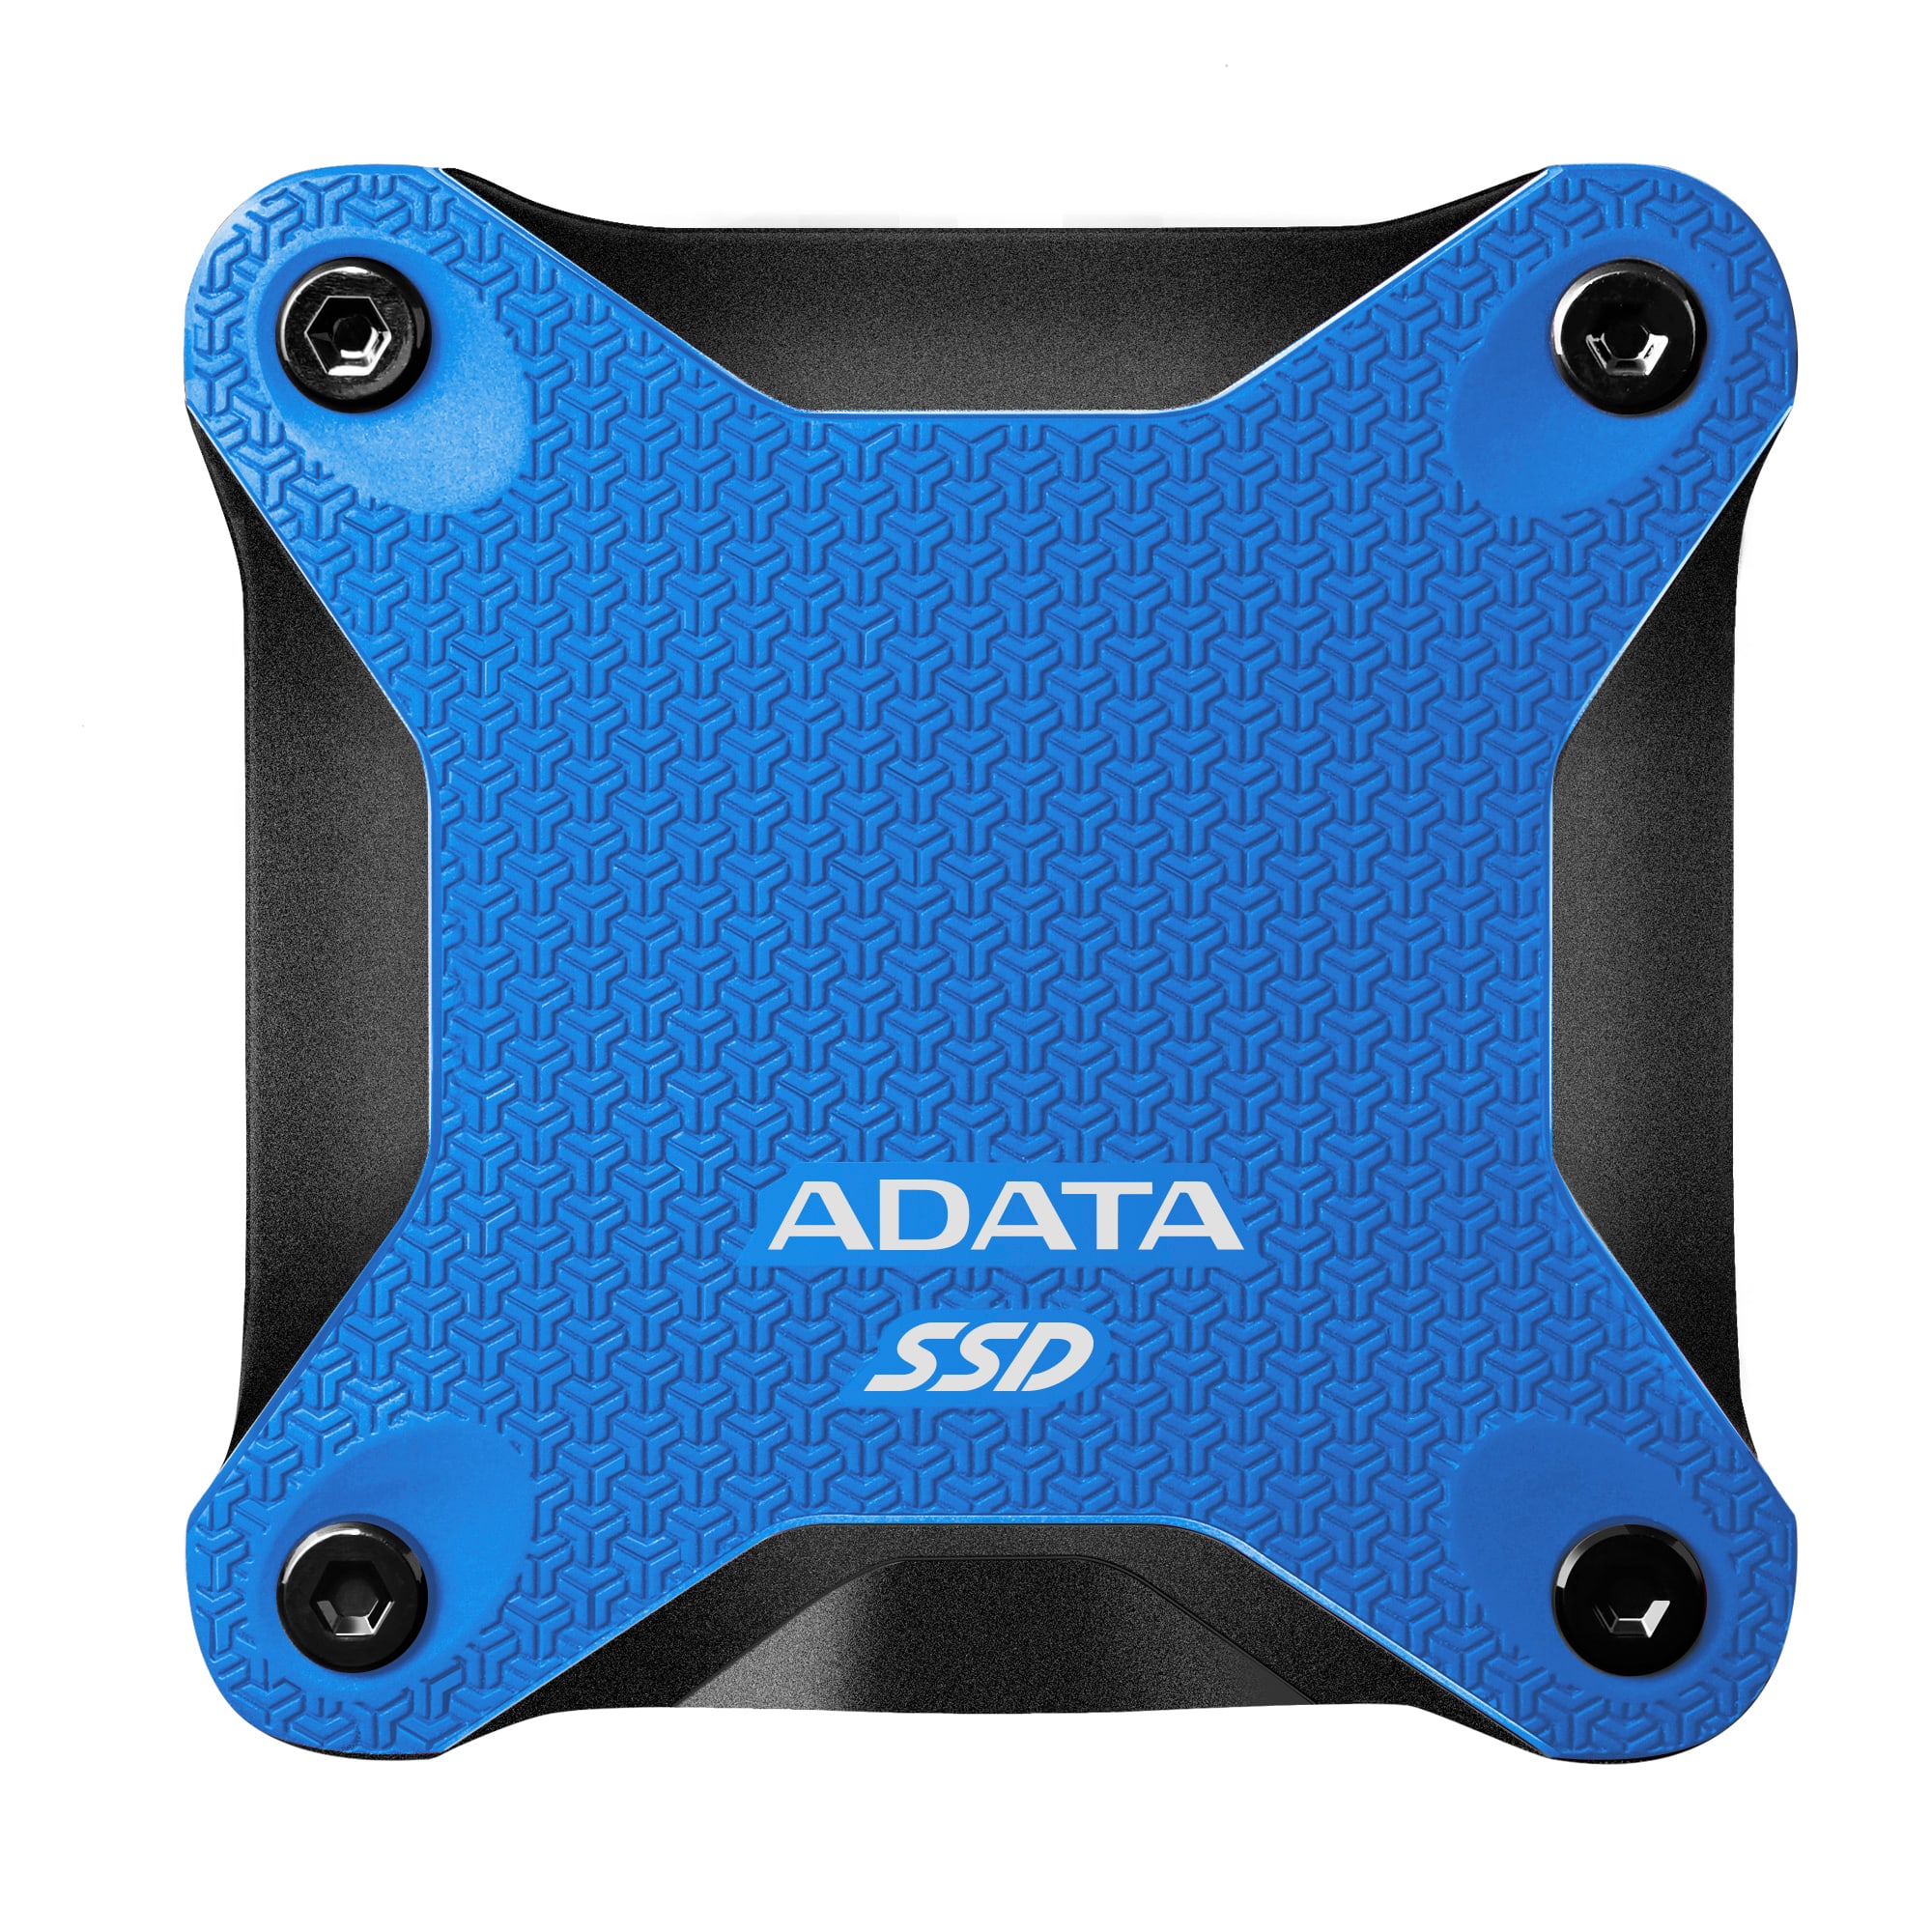 ADATA SSD SD600Q, 480GB, USB 3.2 - rýchlosť 440/430 MB/s (ASD600Q-480GU31-CBL) externý pevný disk, modrá